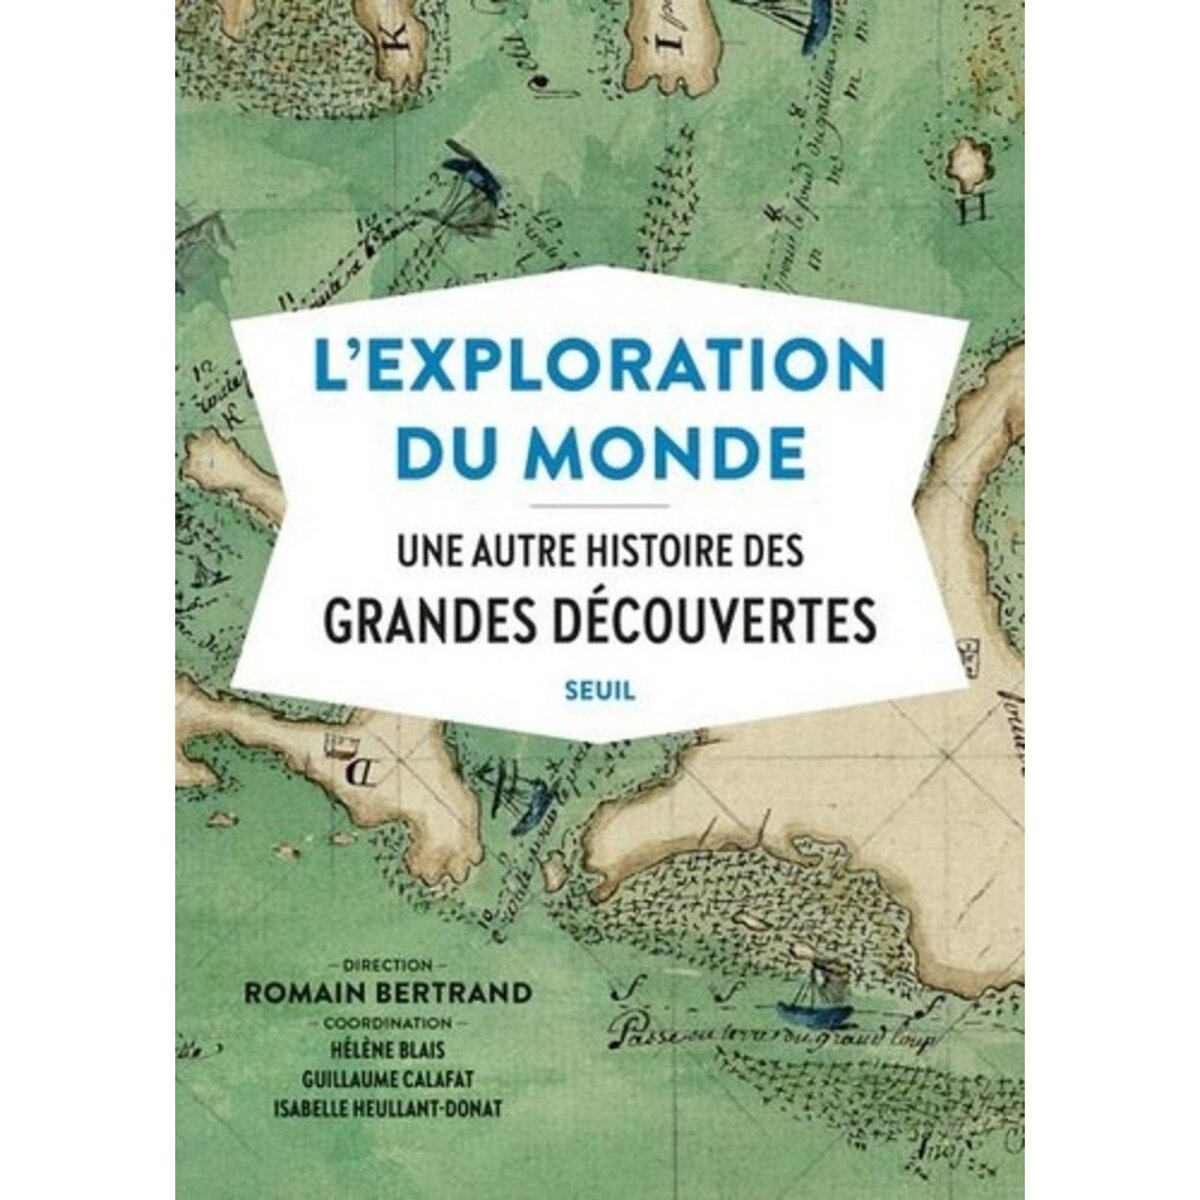  L'EXPLORATION DU MONDE. UNE AUTRE HISTOIRE DES GRANDES DECOUVERTES, Bertrand Romain